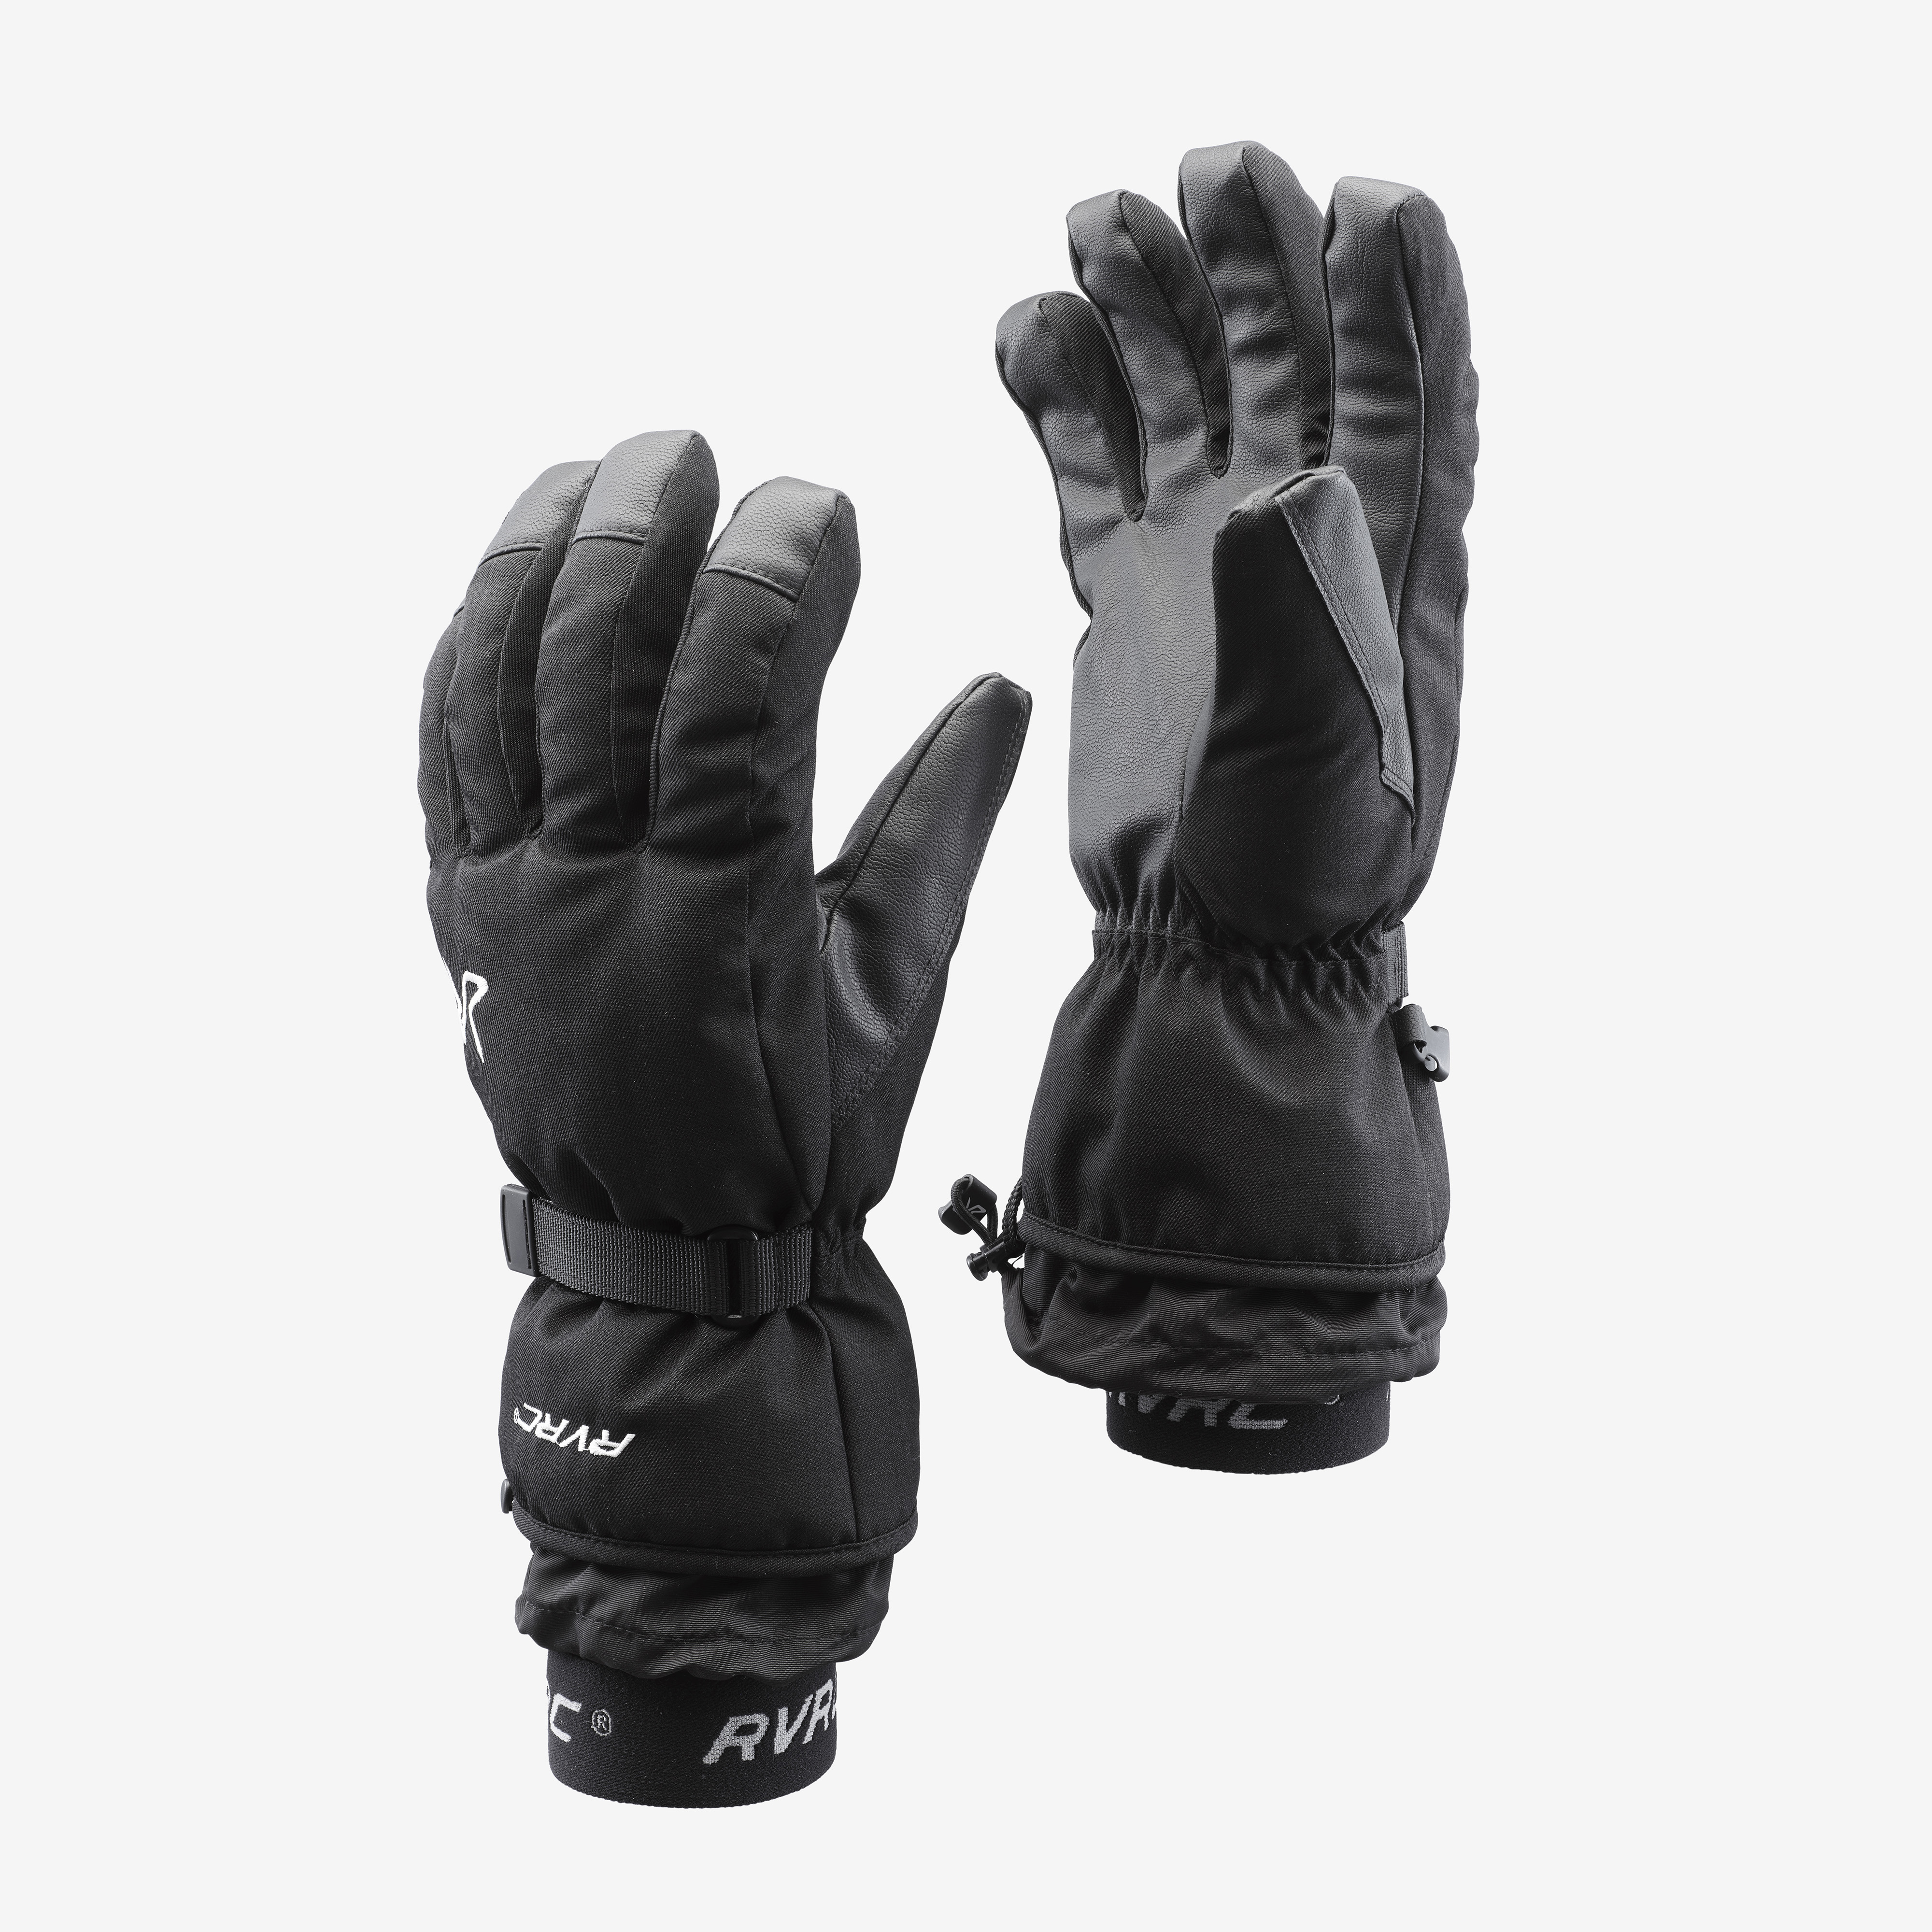 Cabin Ski Glove Black